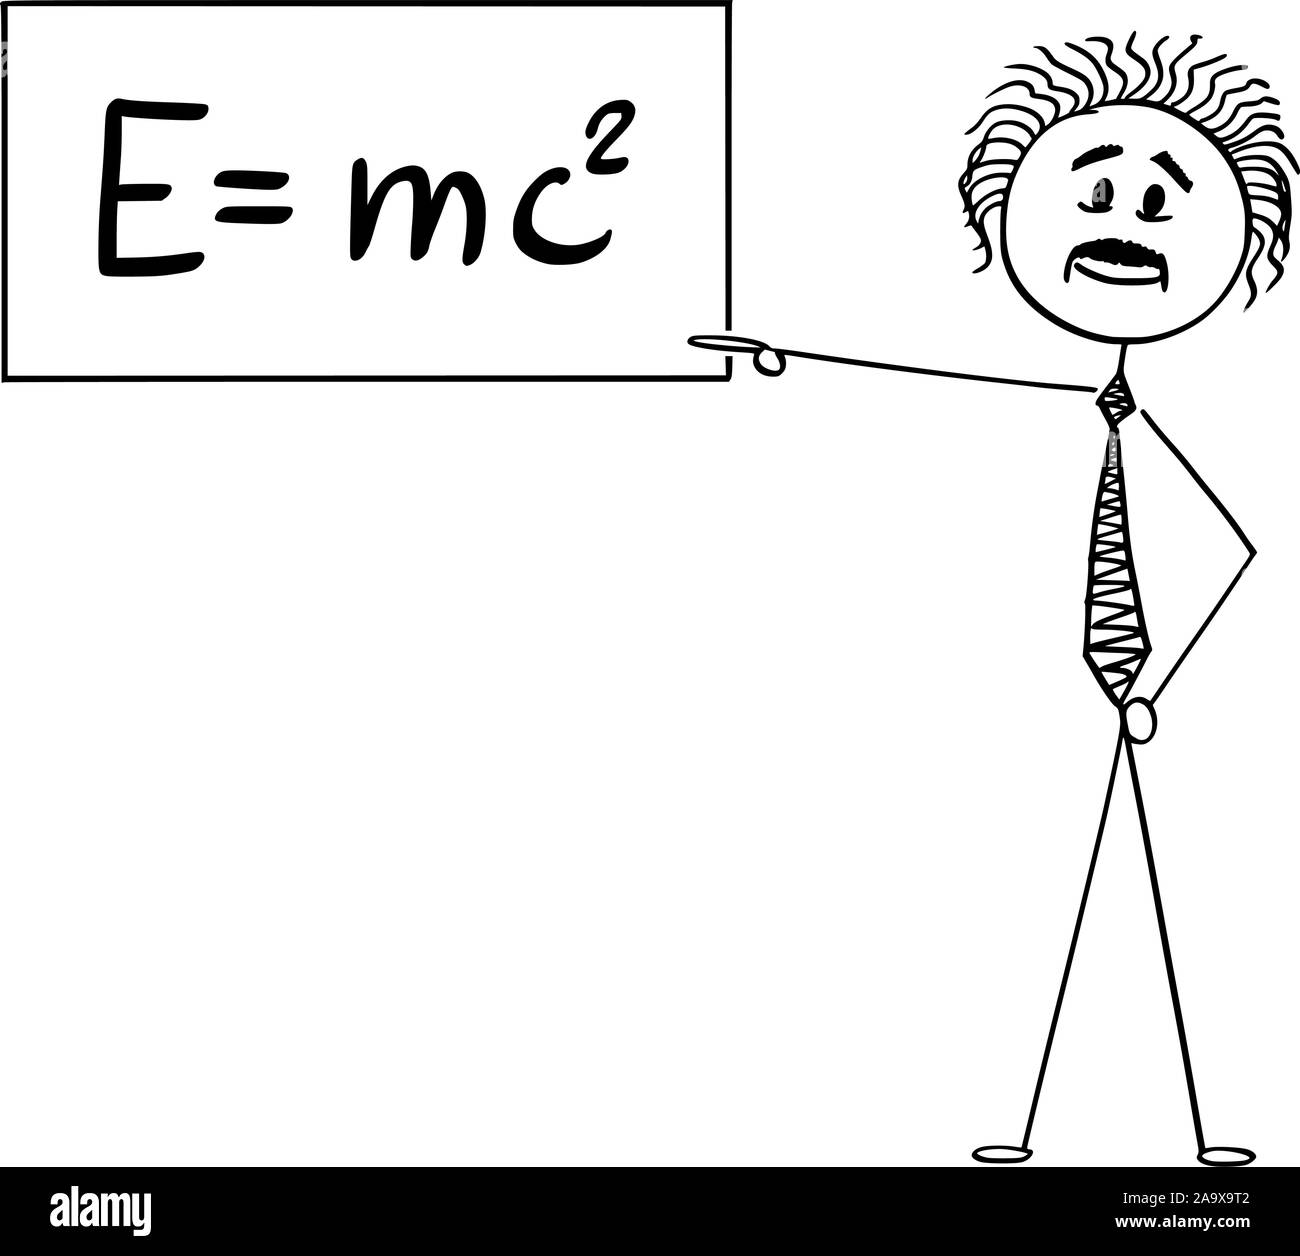 Vector cartoon stick figura disegno illustrazione concettuale dello scienziato Albert Einstein rivolti a firmare con E è uguale a mc2 equazione della relatività speciale teoria. Illustrazione Vettoriale